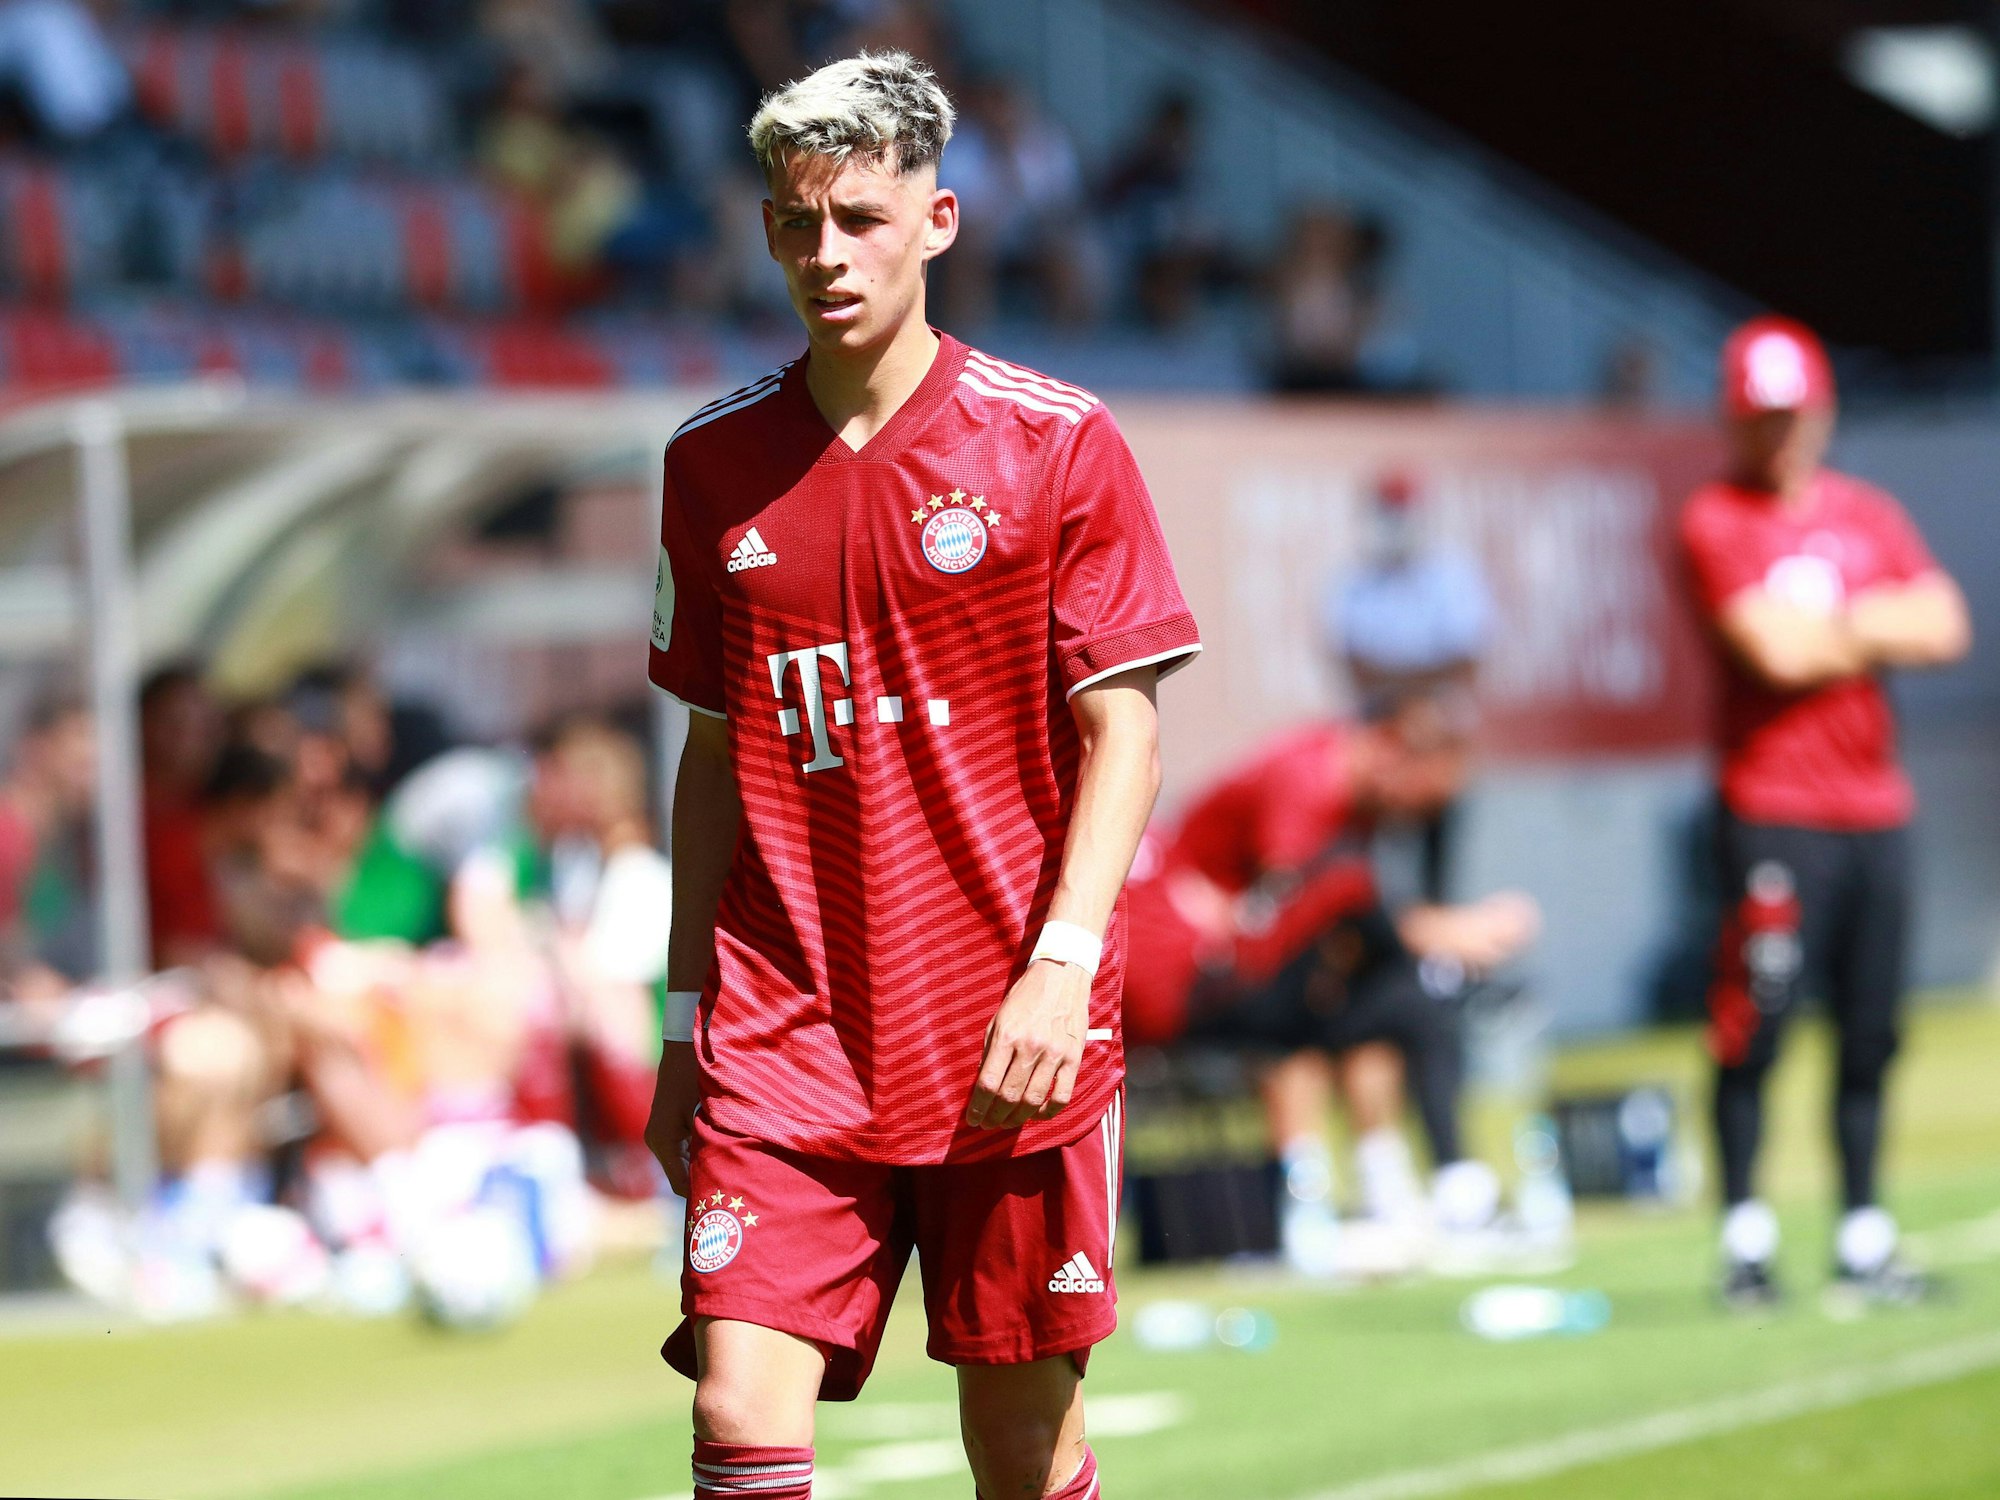 Nick Salihamidzic auf dem Platz für die A-Junioren des FC Bayern München